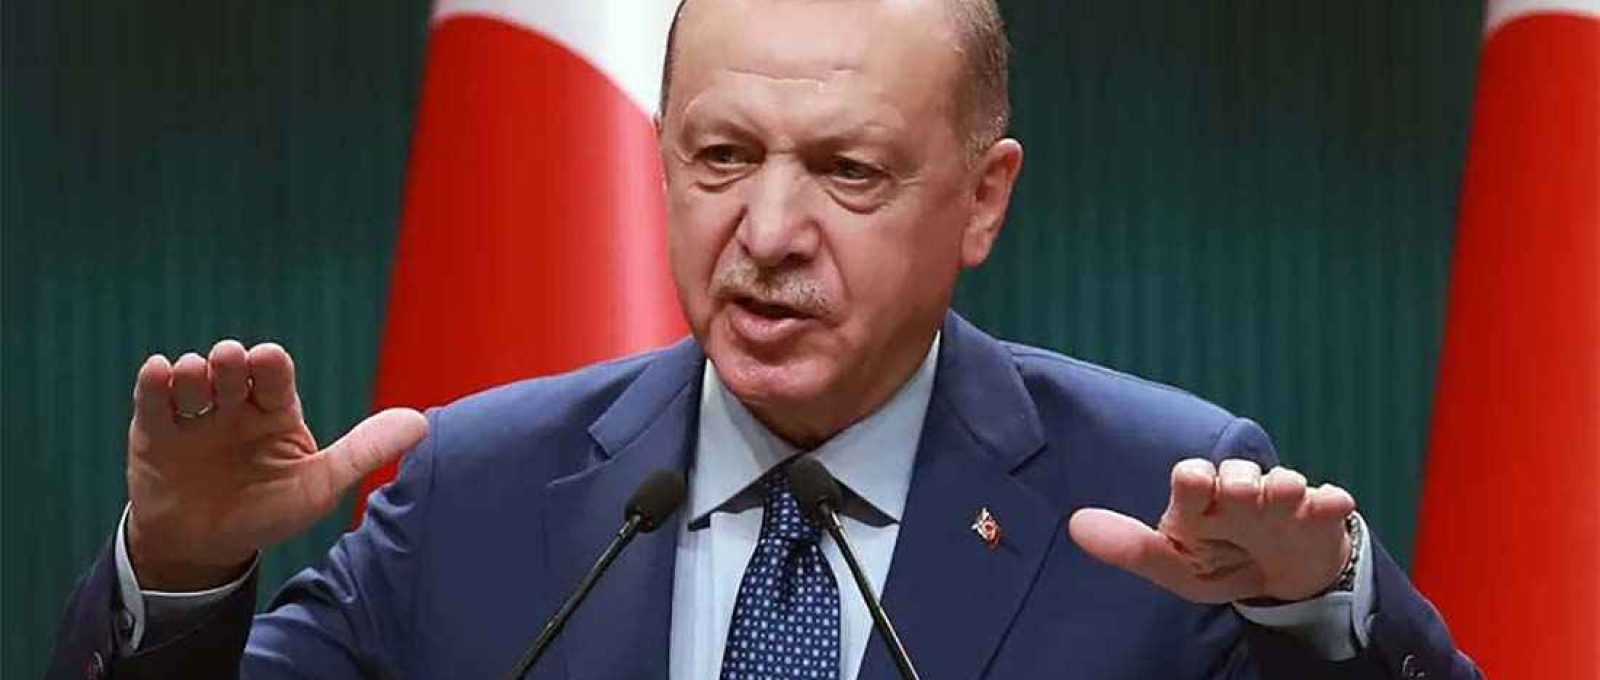 O presidente turco, Recep Tayyip Erdogan, fala no palácio presidencial em Ancara, Turquia, em 29 de março de 2021 (Adem Altan/AFP).